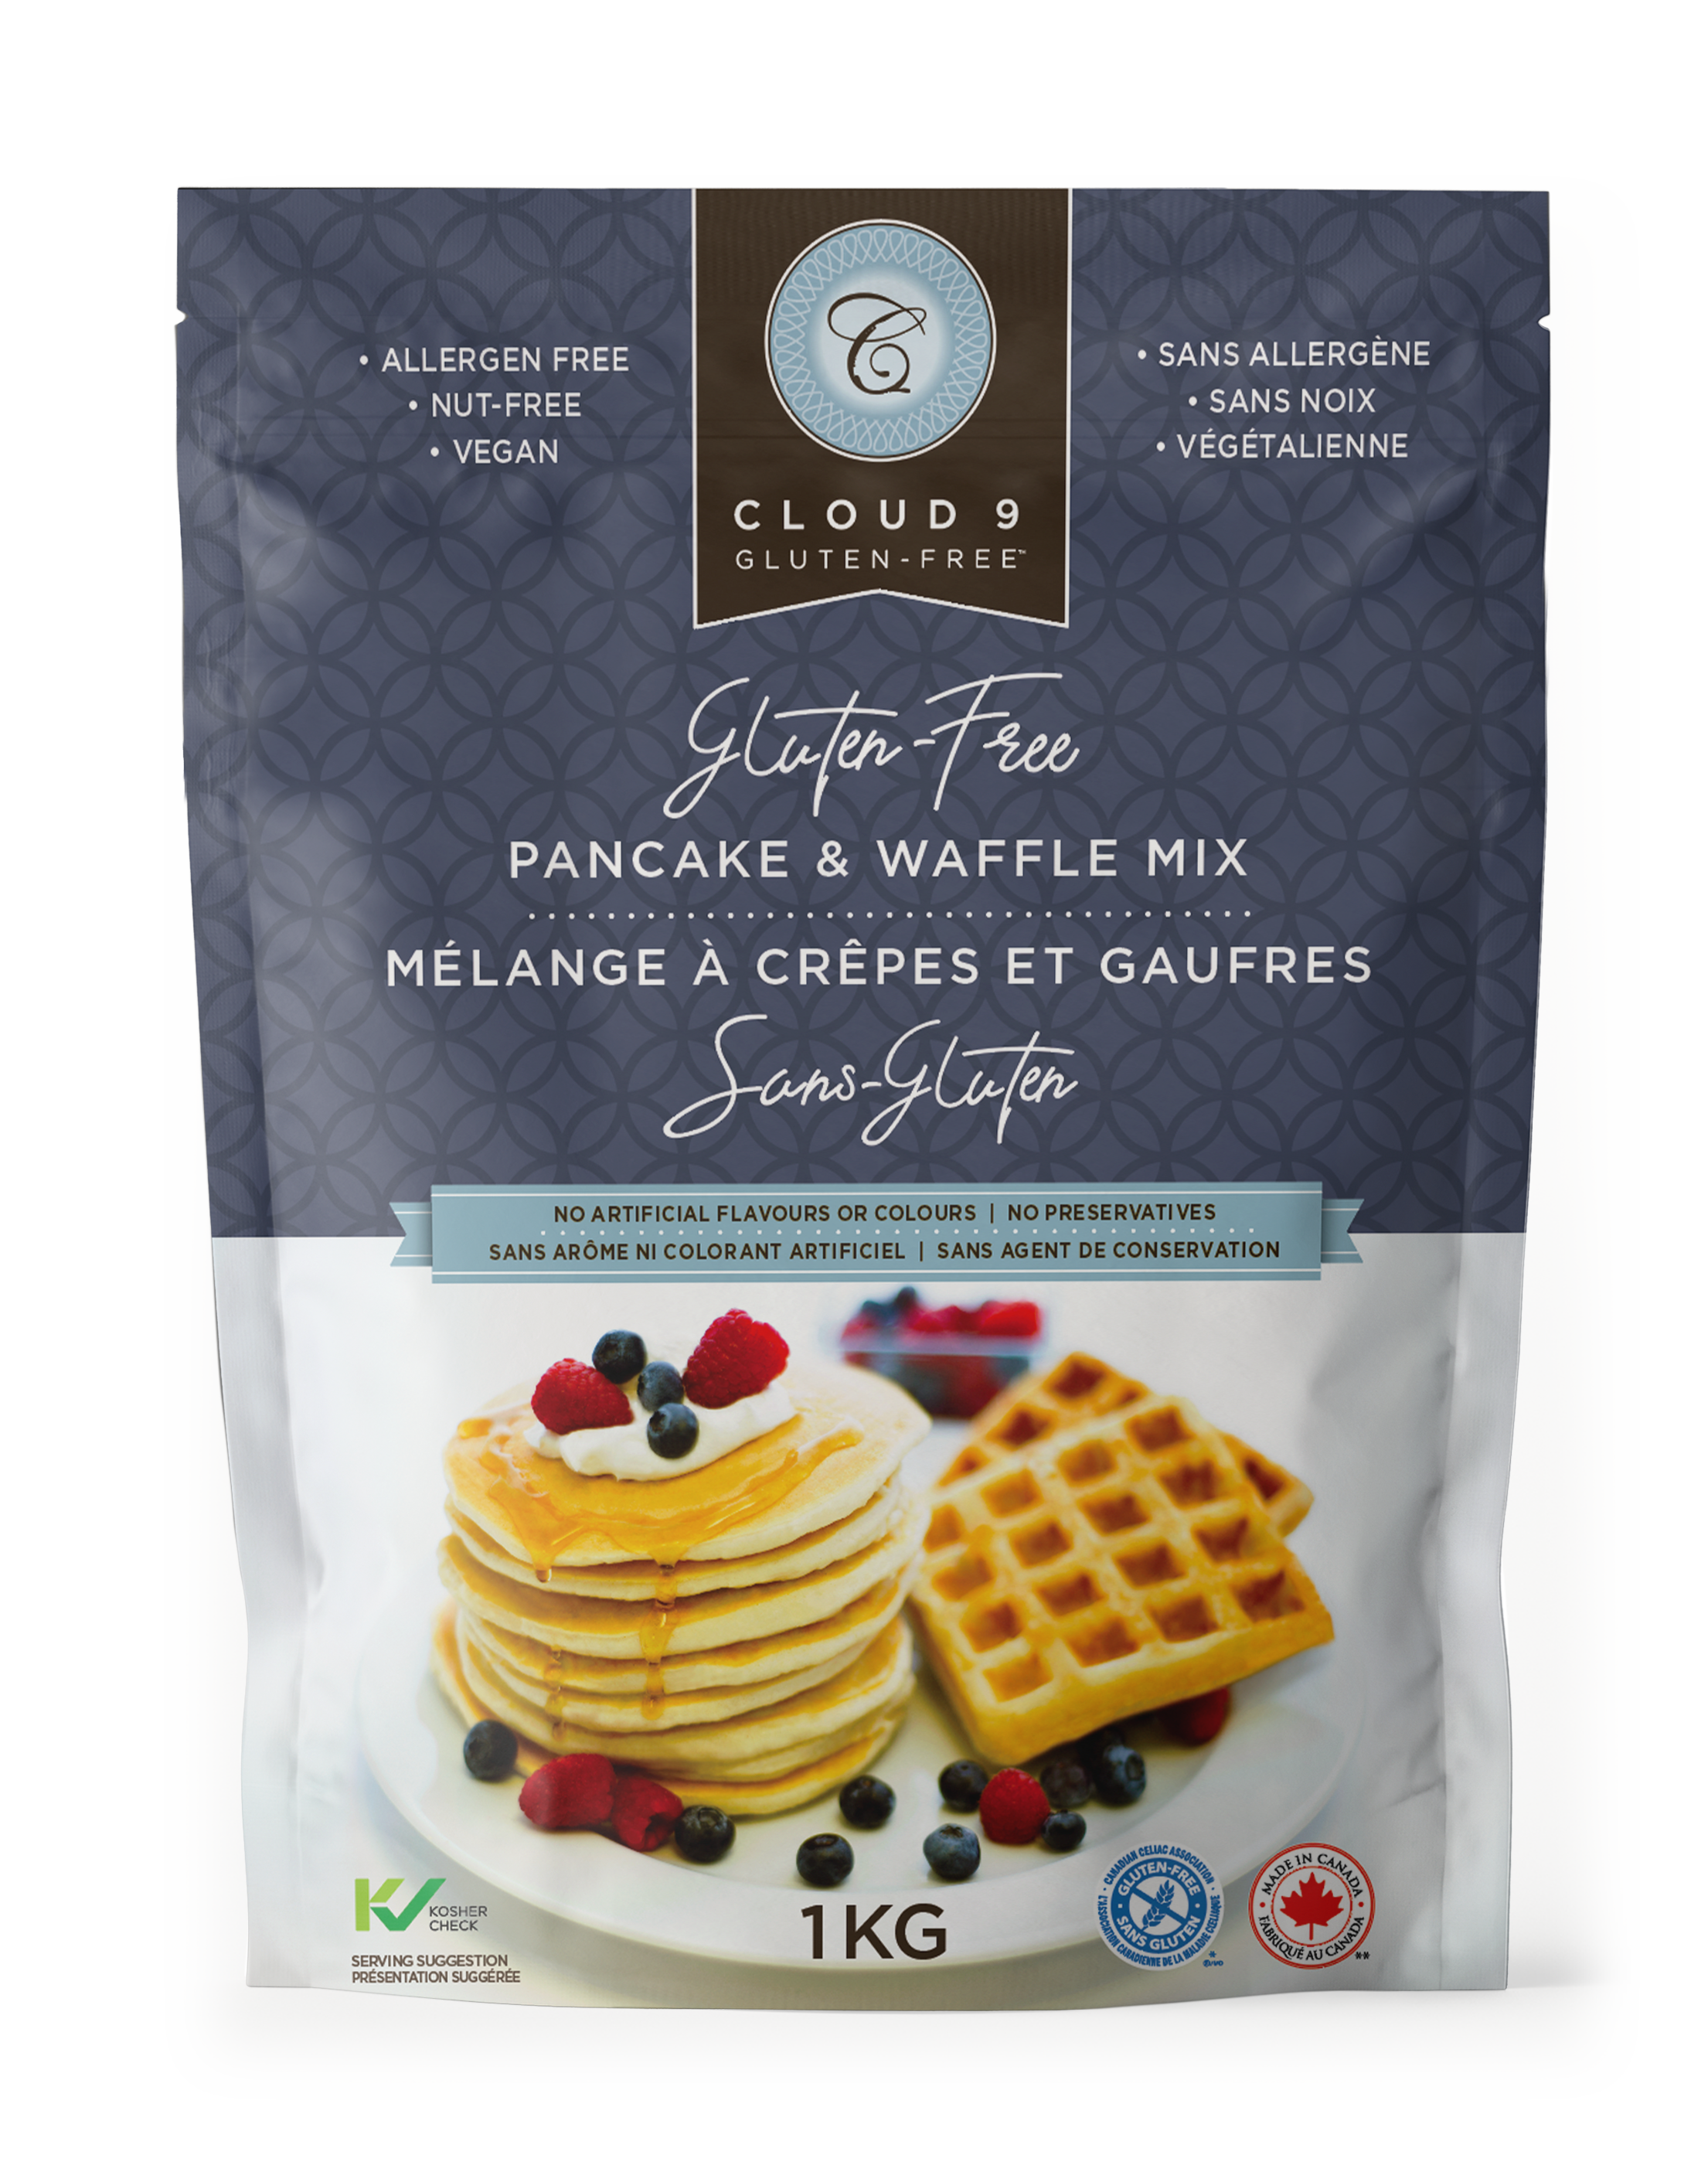 Cloud 9 Gluten Free Pancake & Waffle Mix